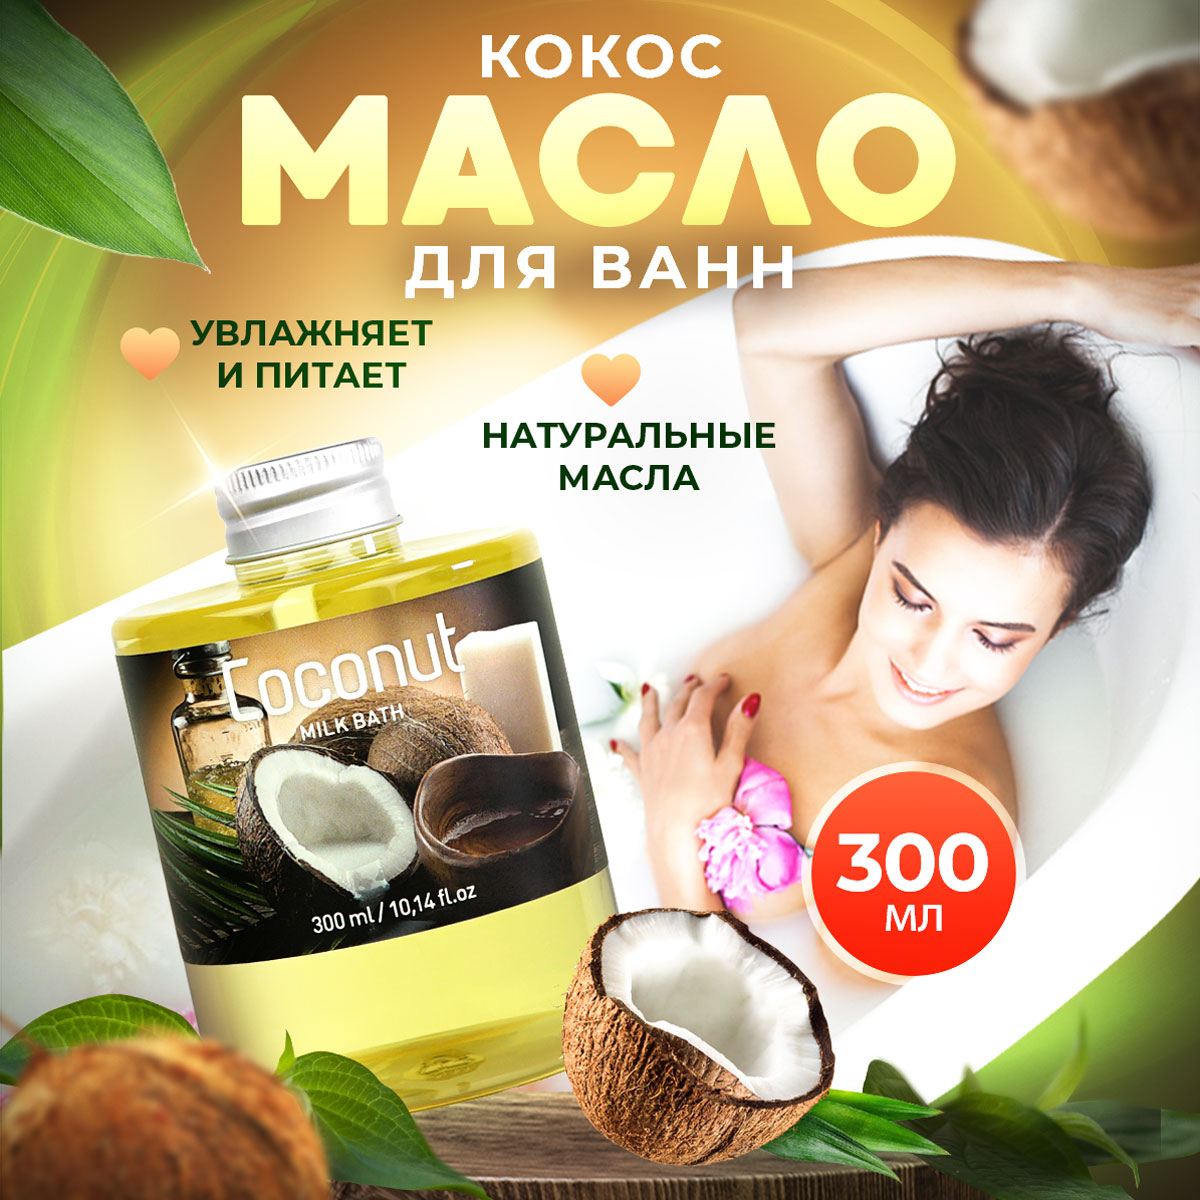 Масло для ванны и душа Thai Traditions натуральное гидрофильное увлажняющее Кокос, 300 мл destek косметическое масло конского каштана питание увлажнение расслабление 250